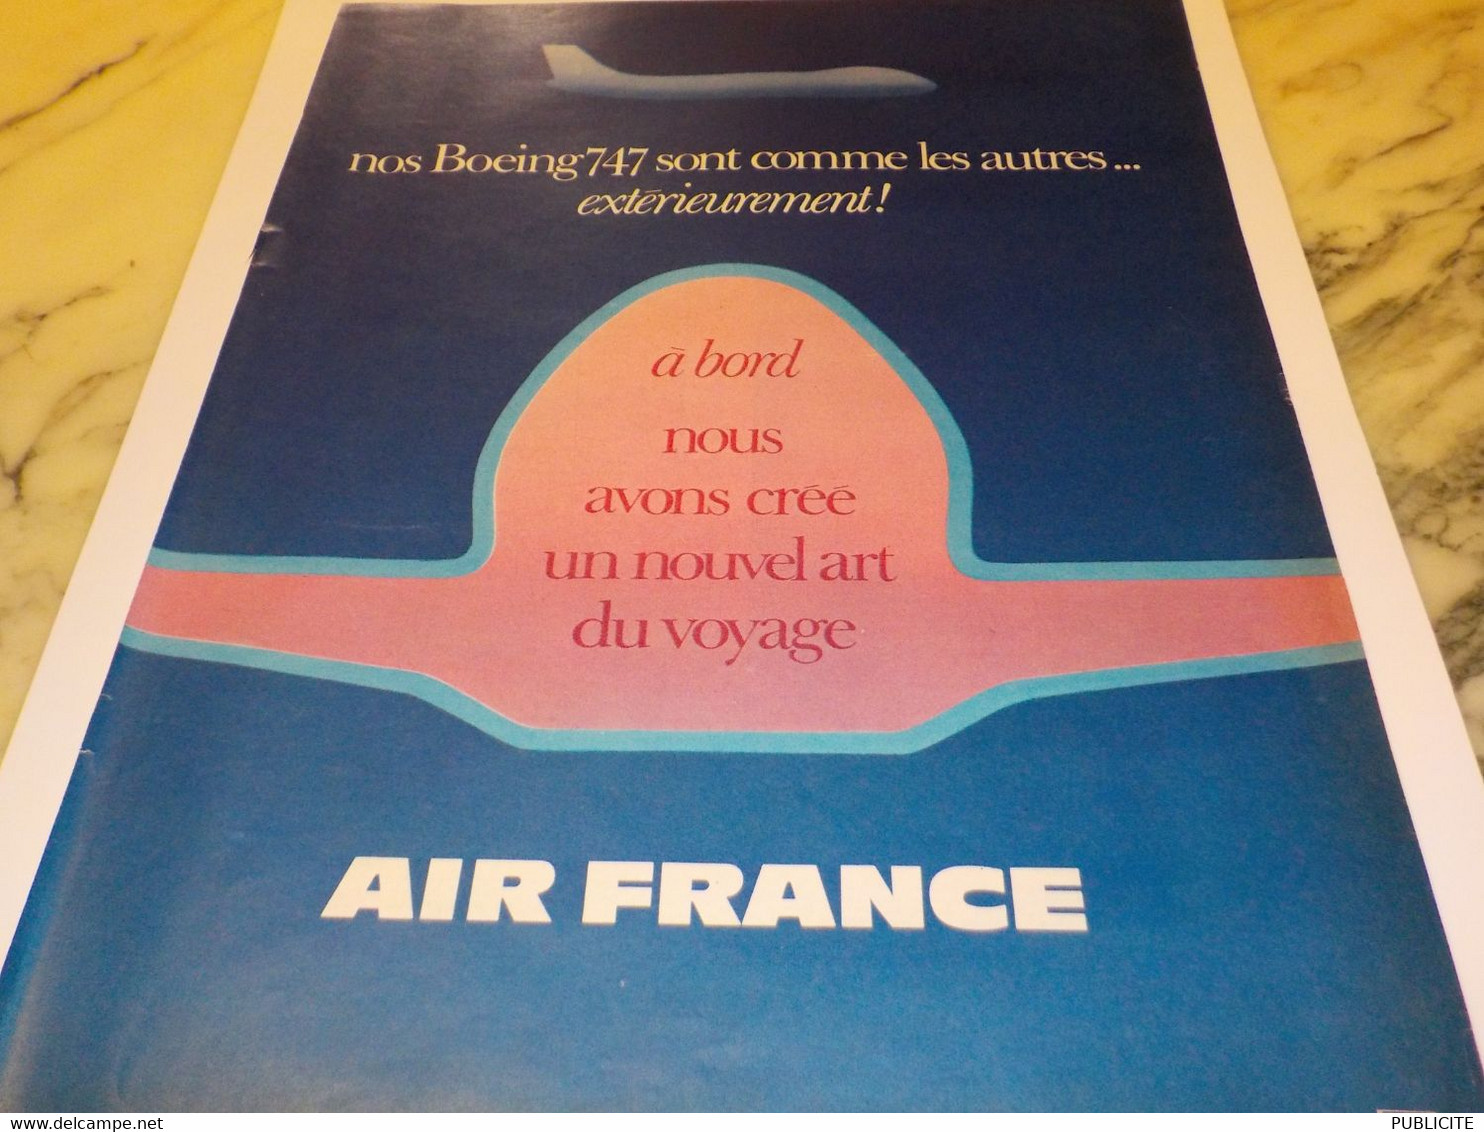 ANCIENNE PUBLICITE BOEING 747 ET   AIR FRANCE  1970 - Advertisements